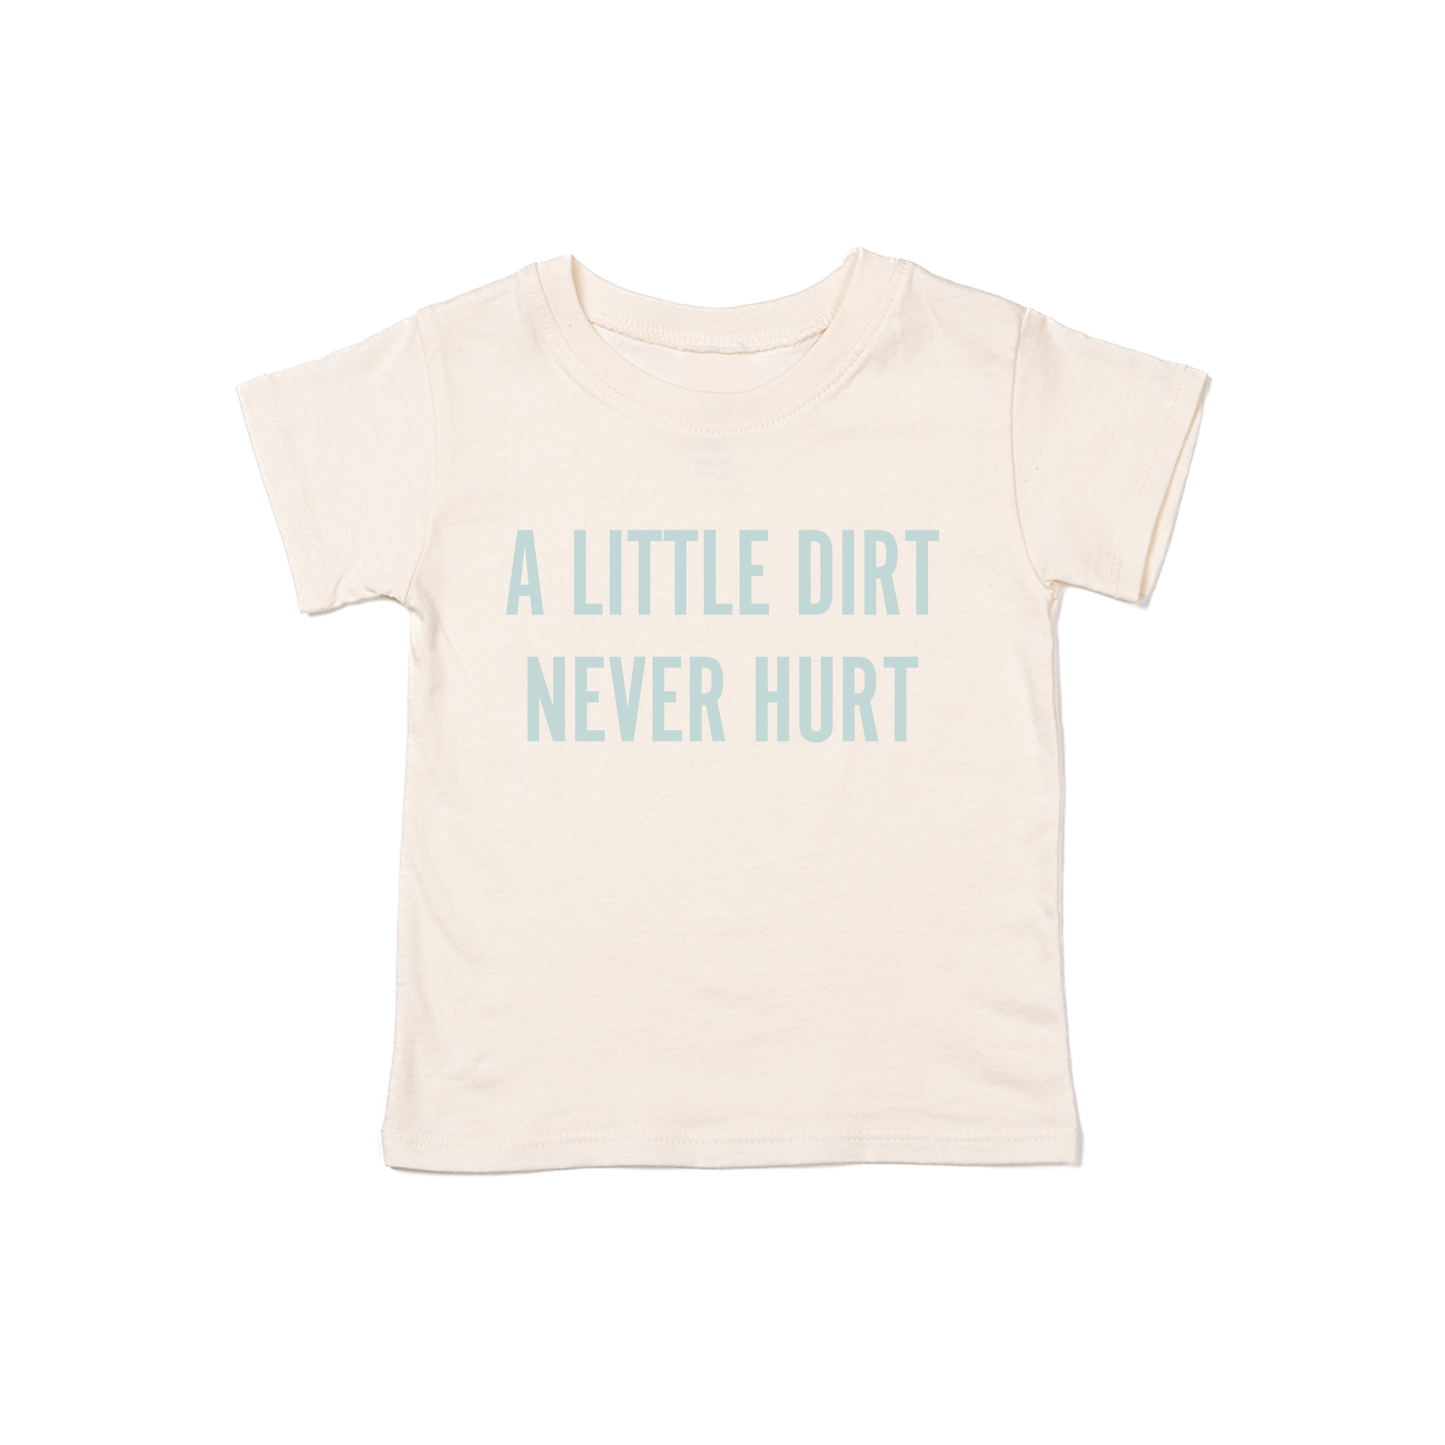 A Little Dirt Never Hurt (Sky) - Kids Tee (Natural)